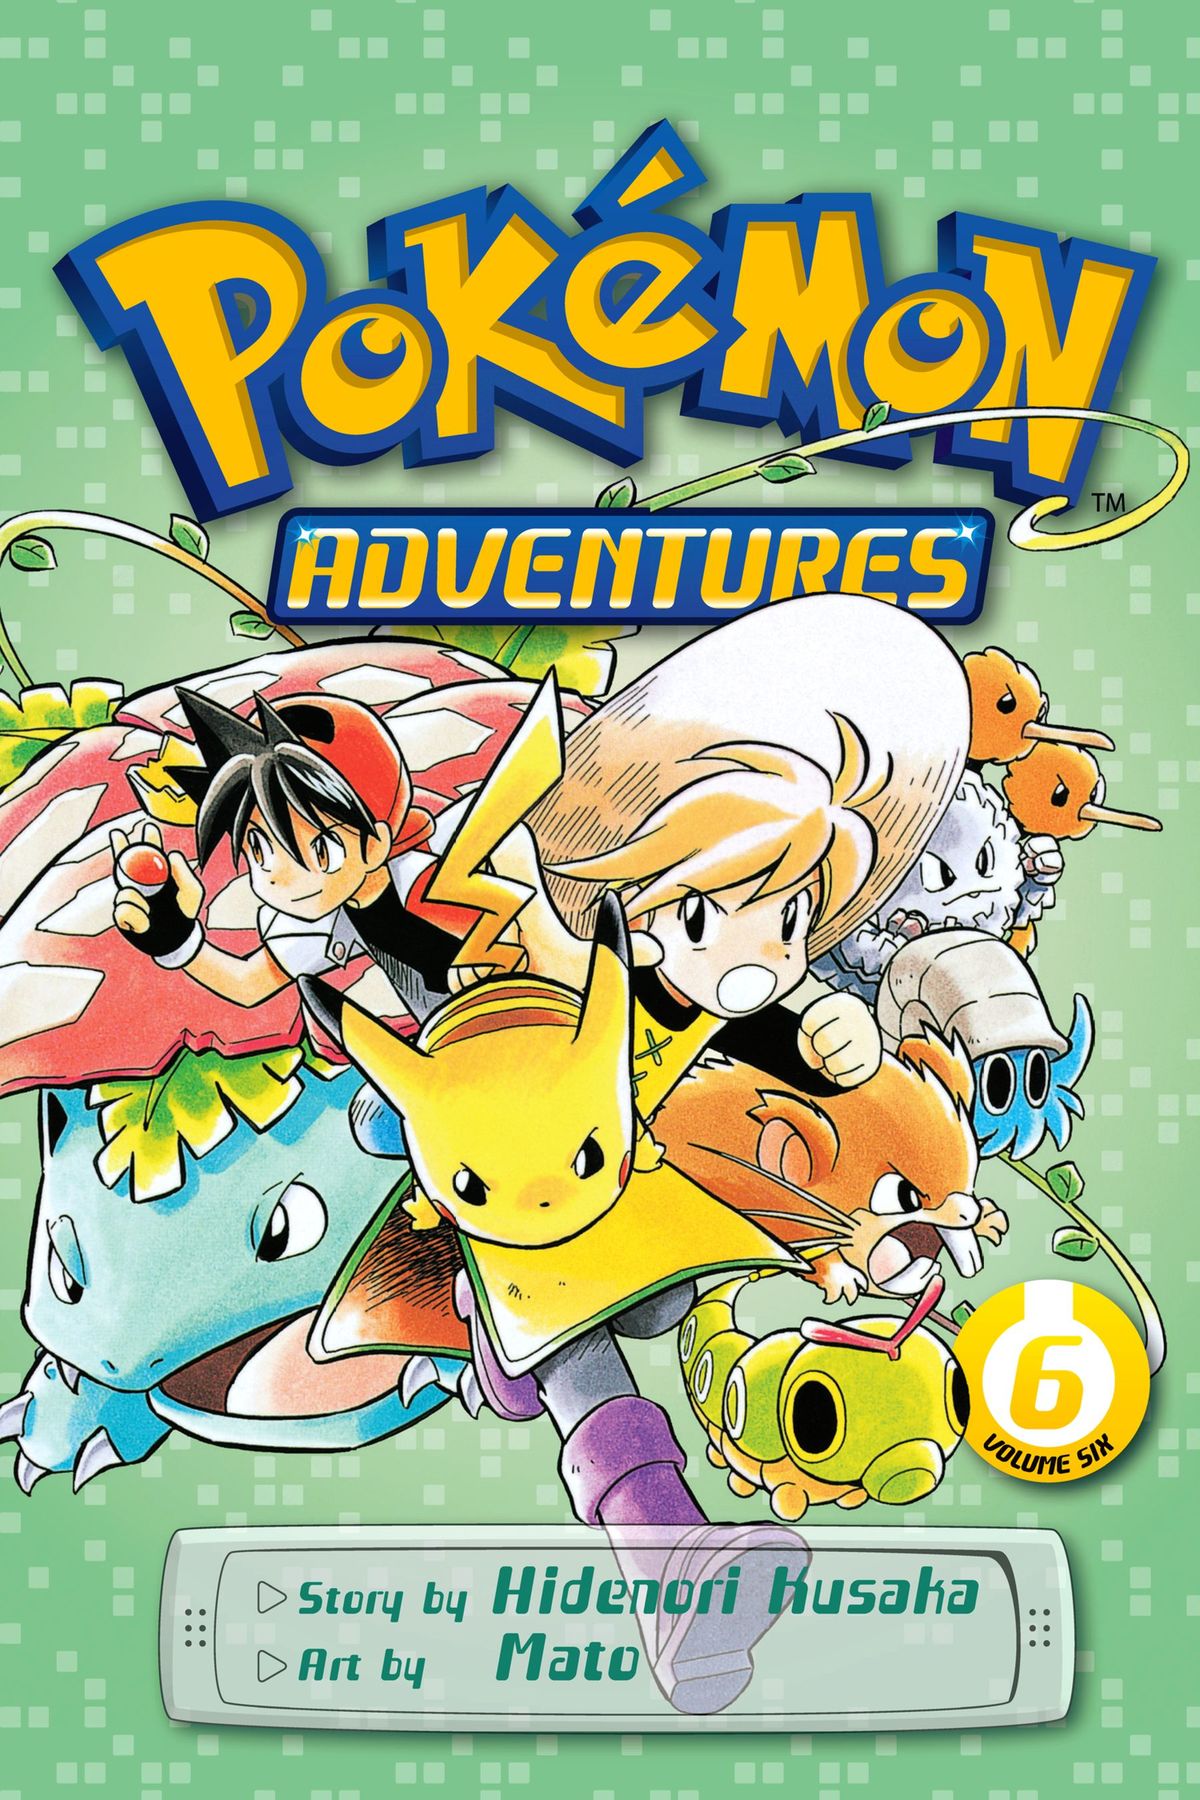 Pokémon Adventures - Bulbapedia, the community-driven Pokémon encyclopedia